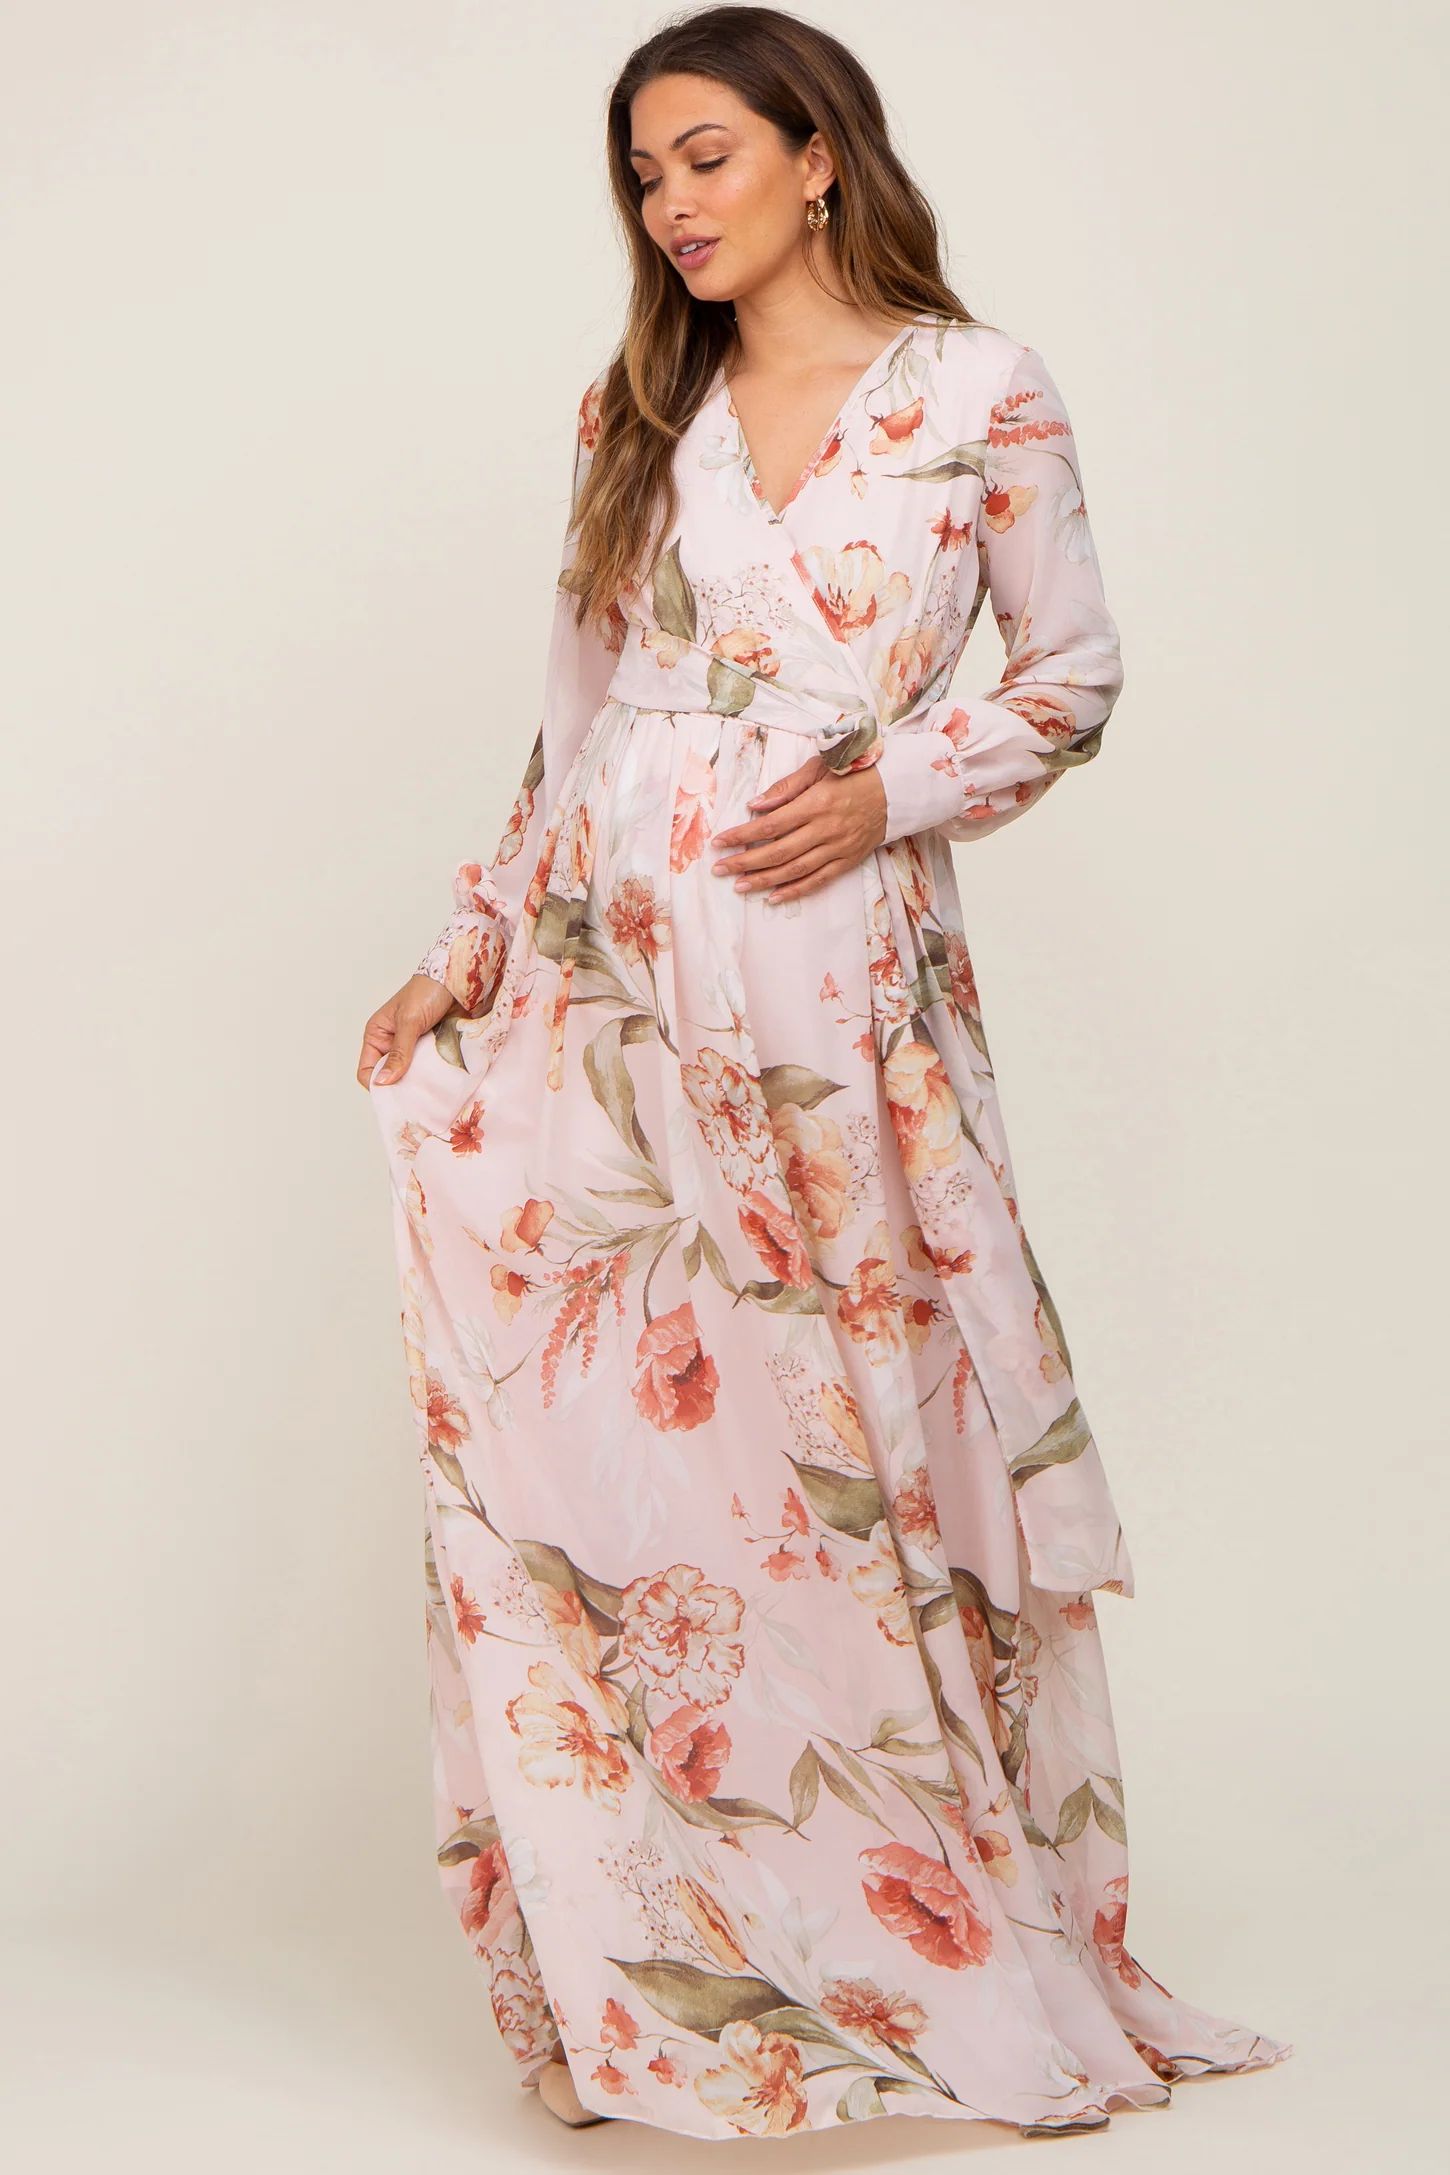 Light Pink Floral Chiffon Long Sleeve Maternity Maxi Dress | PinkBlush Maternity